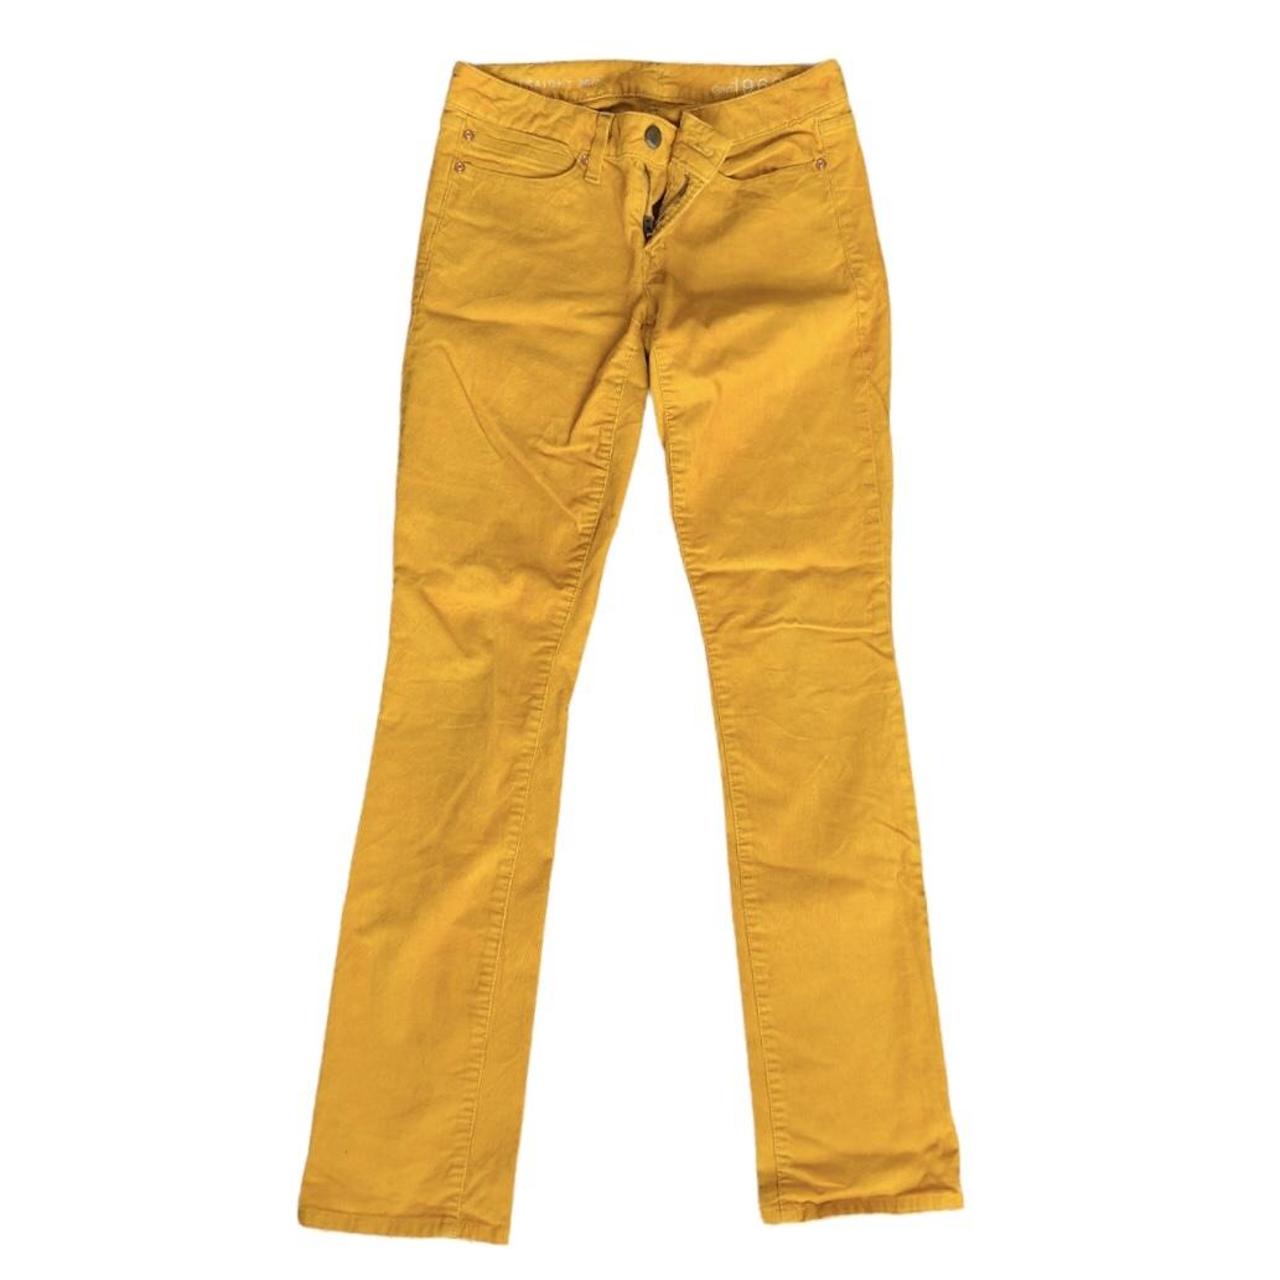 Gap Women's Yellow Trousers | Depop